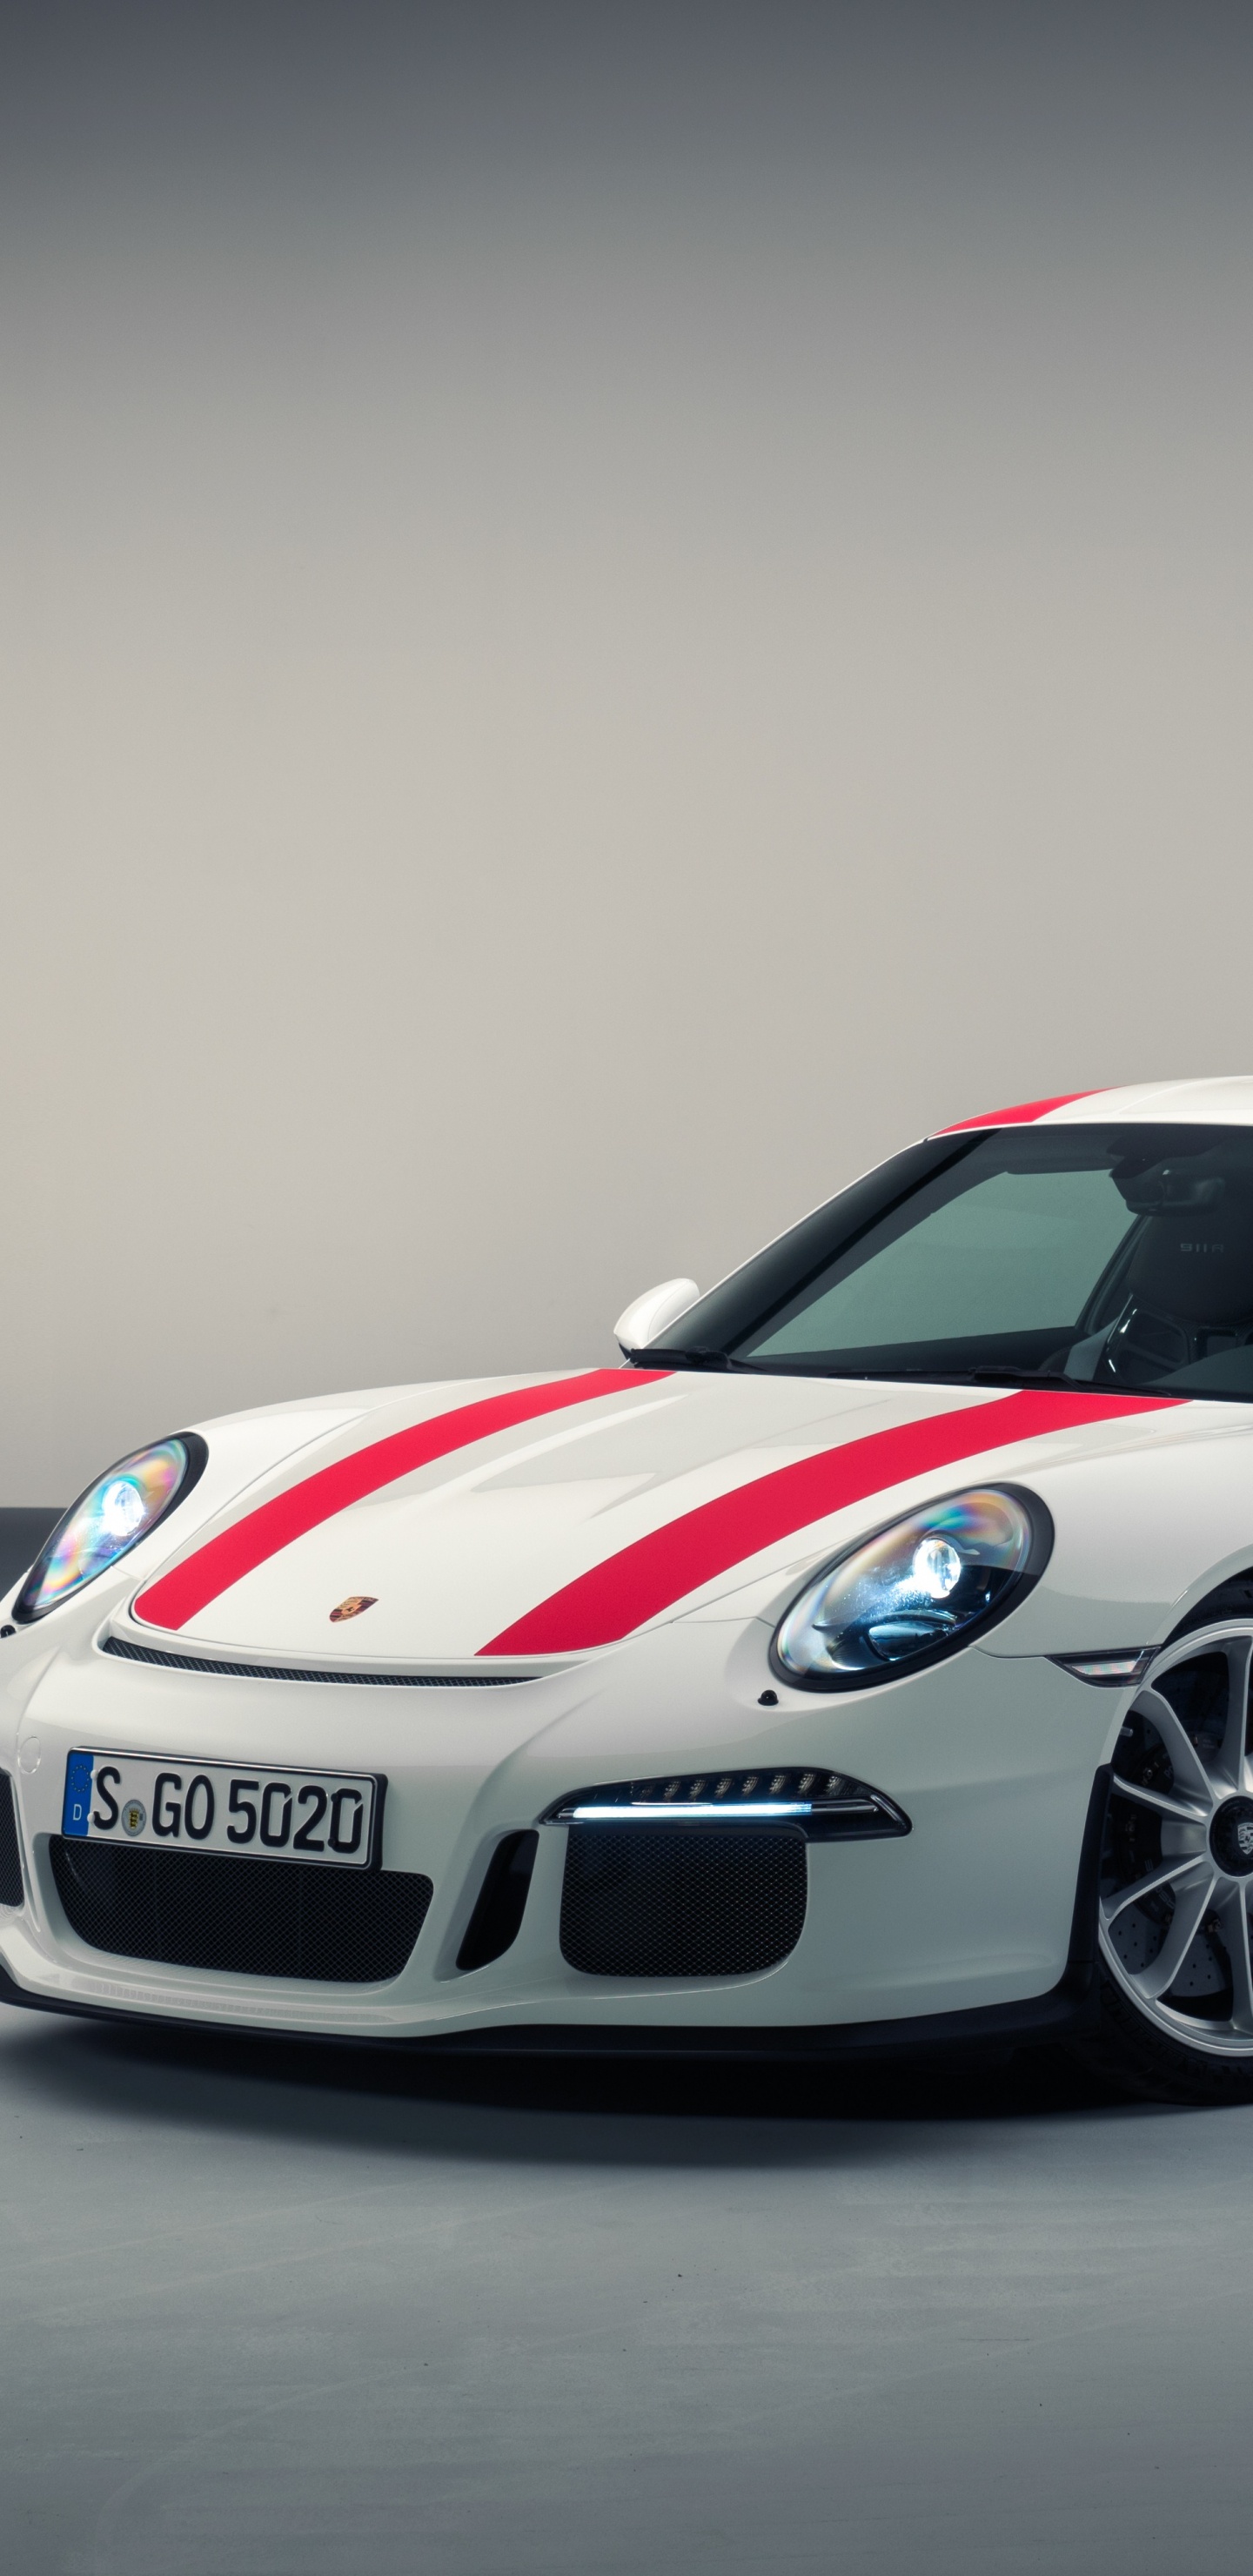 Porsche 911 Blanche et Rouge. Wallpaper in 1440x2960 Resolution